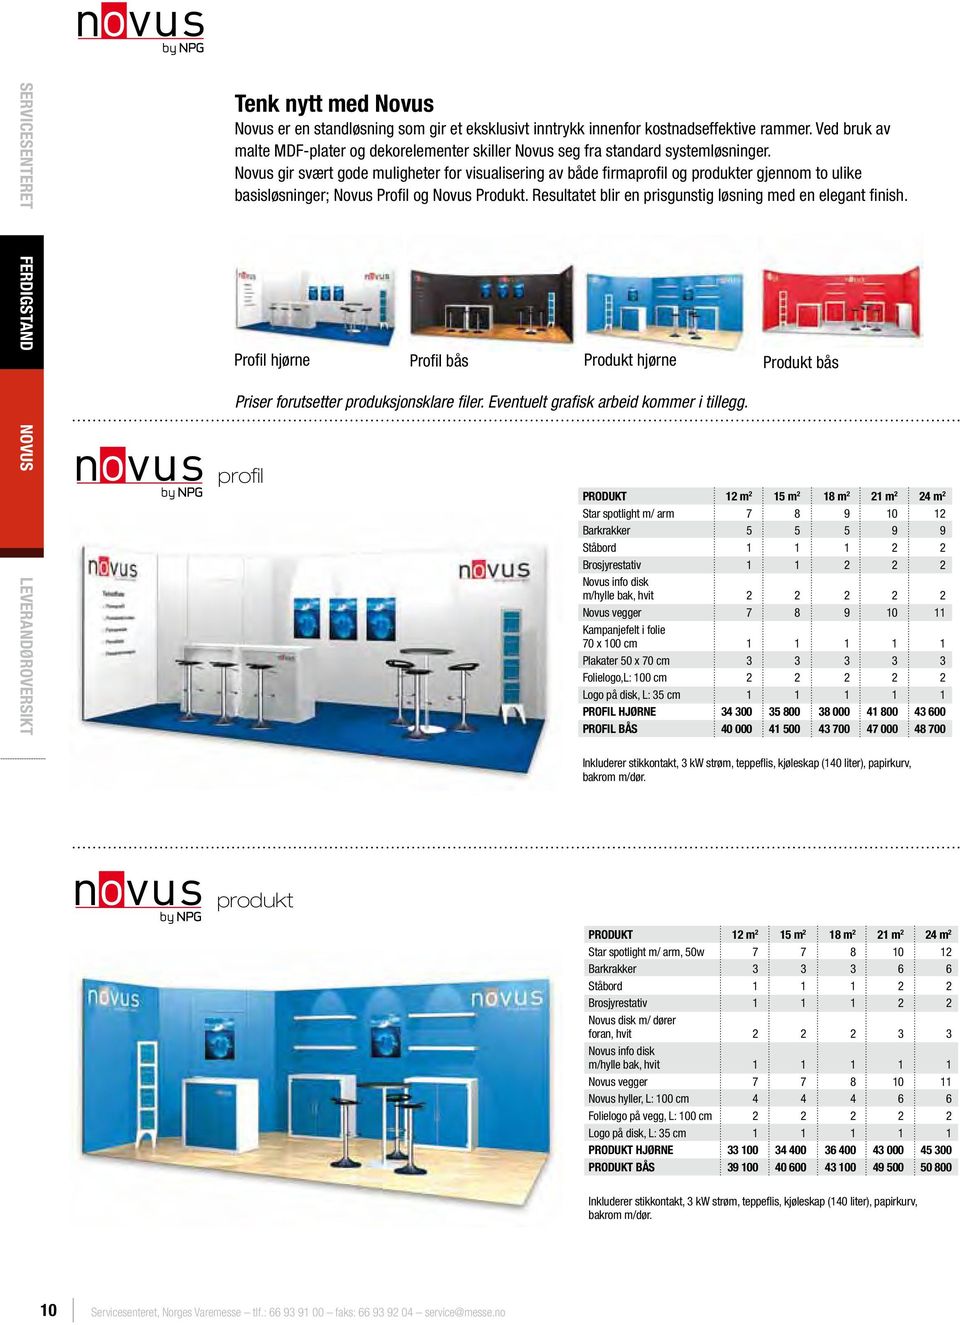 Novus gir svært gode muligheter for visualisering av både firmaprofil og produkter gjennom to ulike basisløsninger; Novus Profil og Novus Produkt.